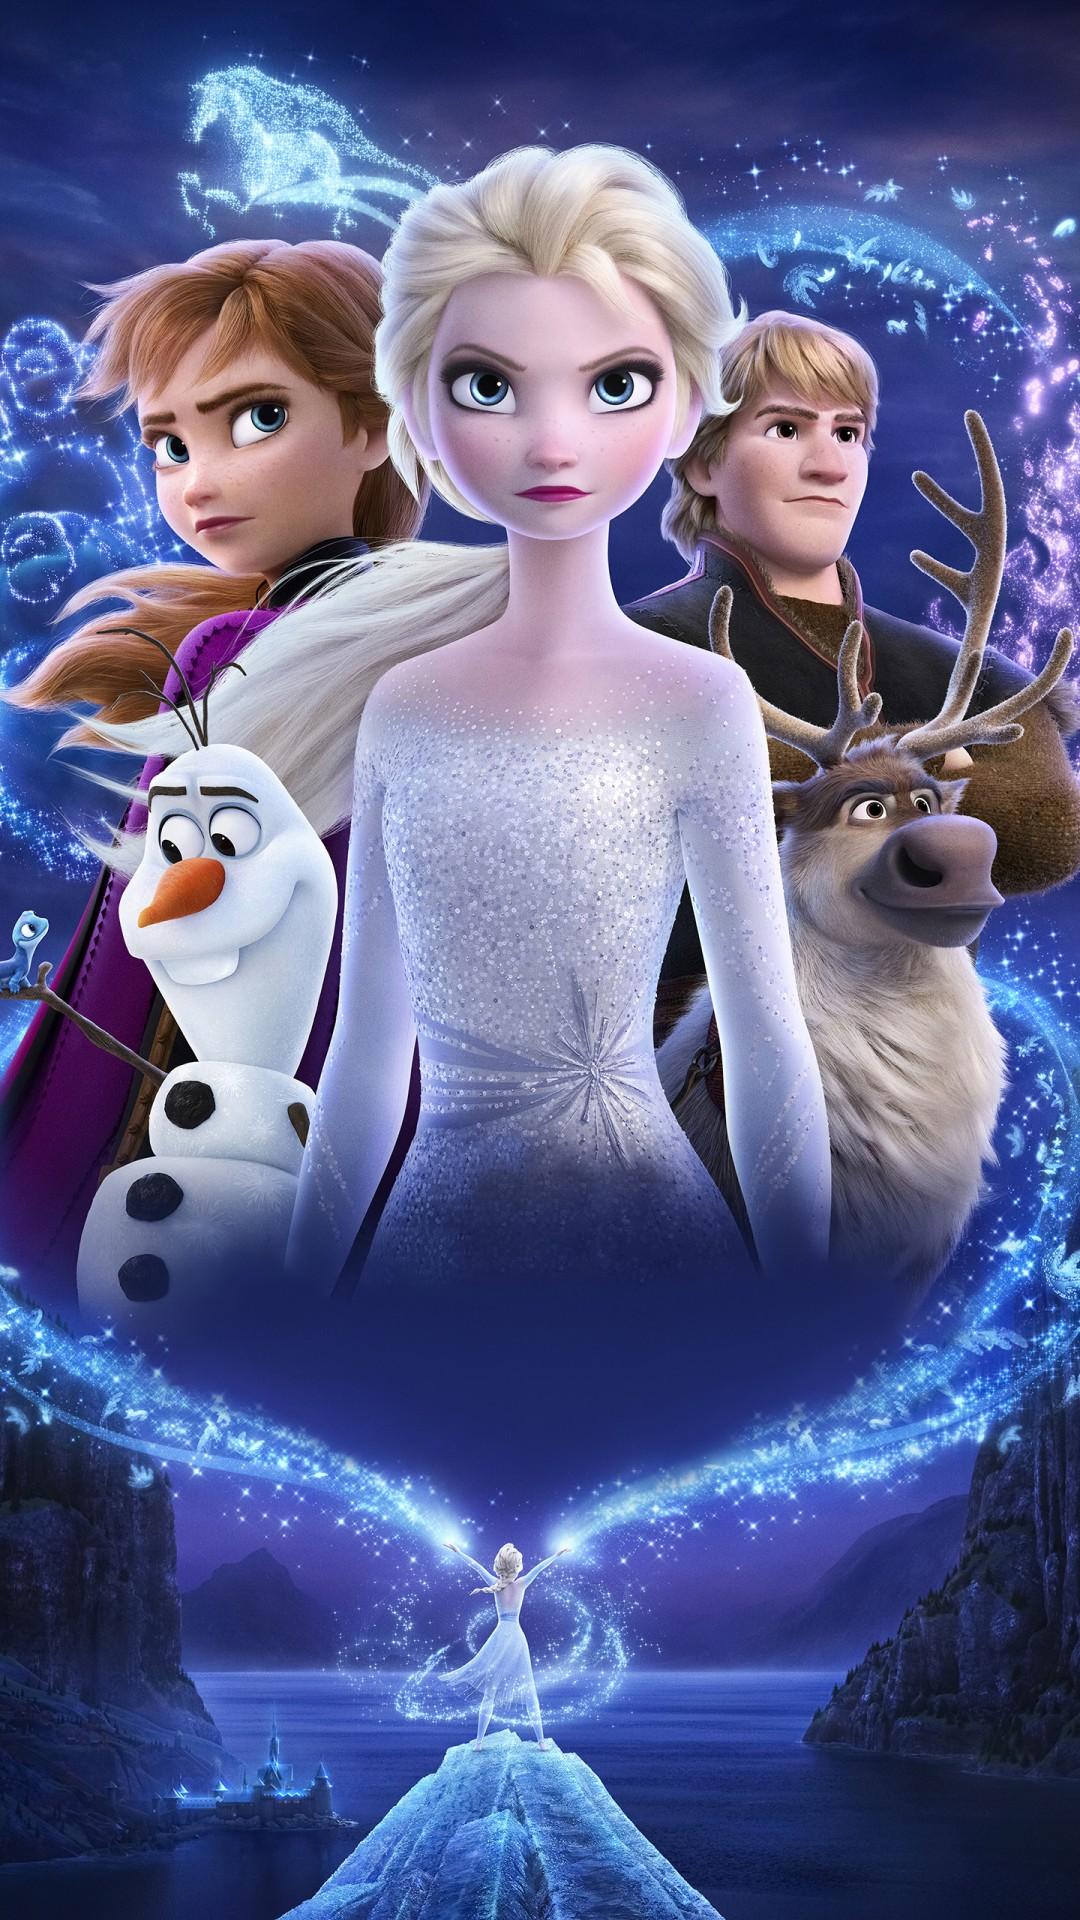 Frozen 2 Elsa Iphone Wallpapers Wallpaper Cave